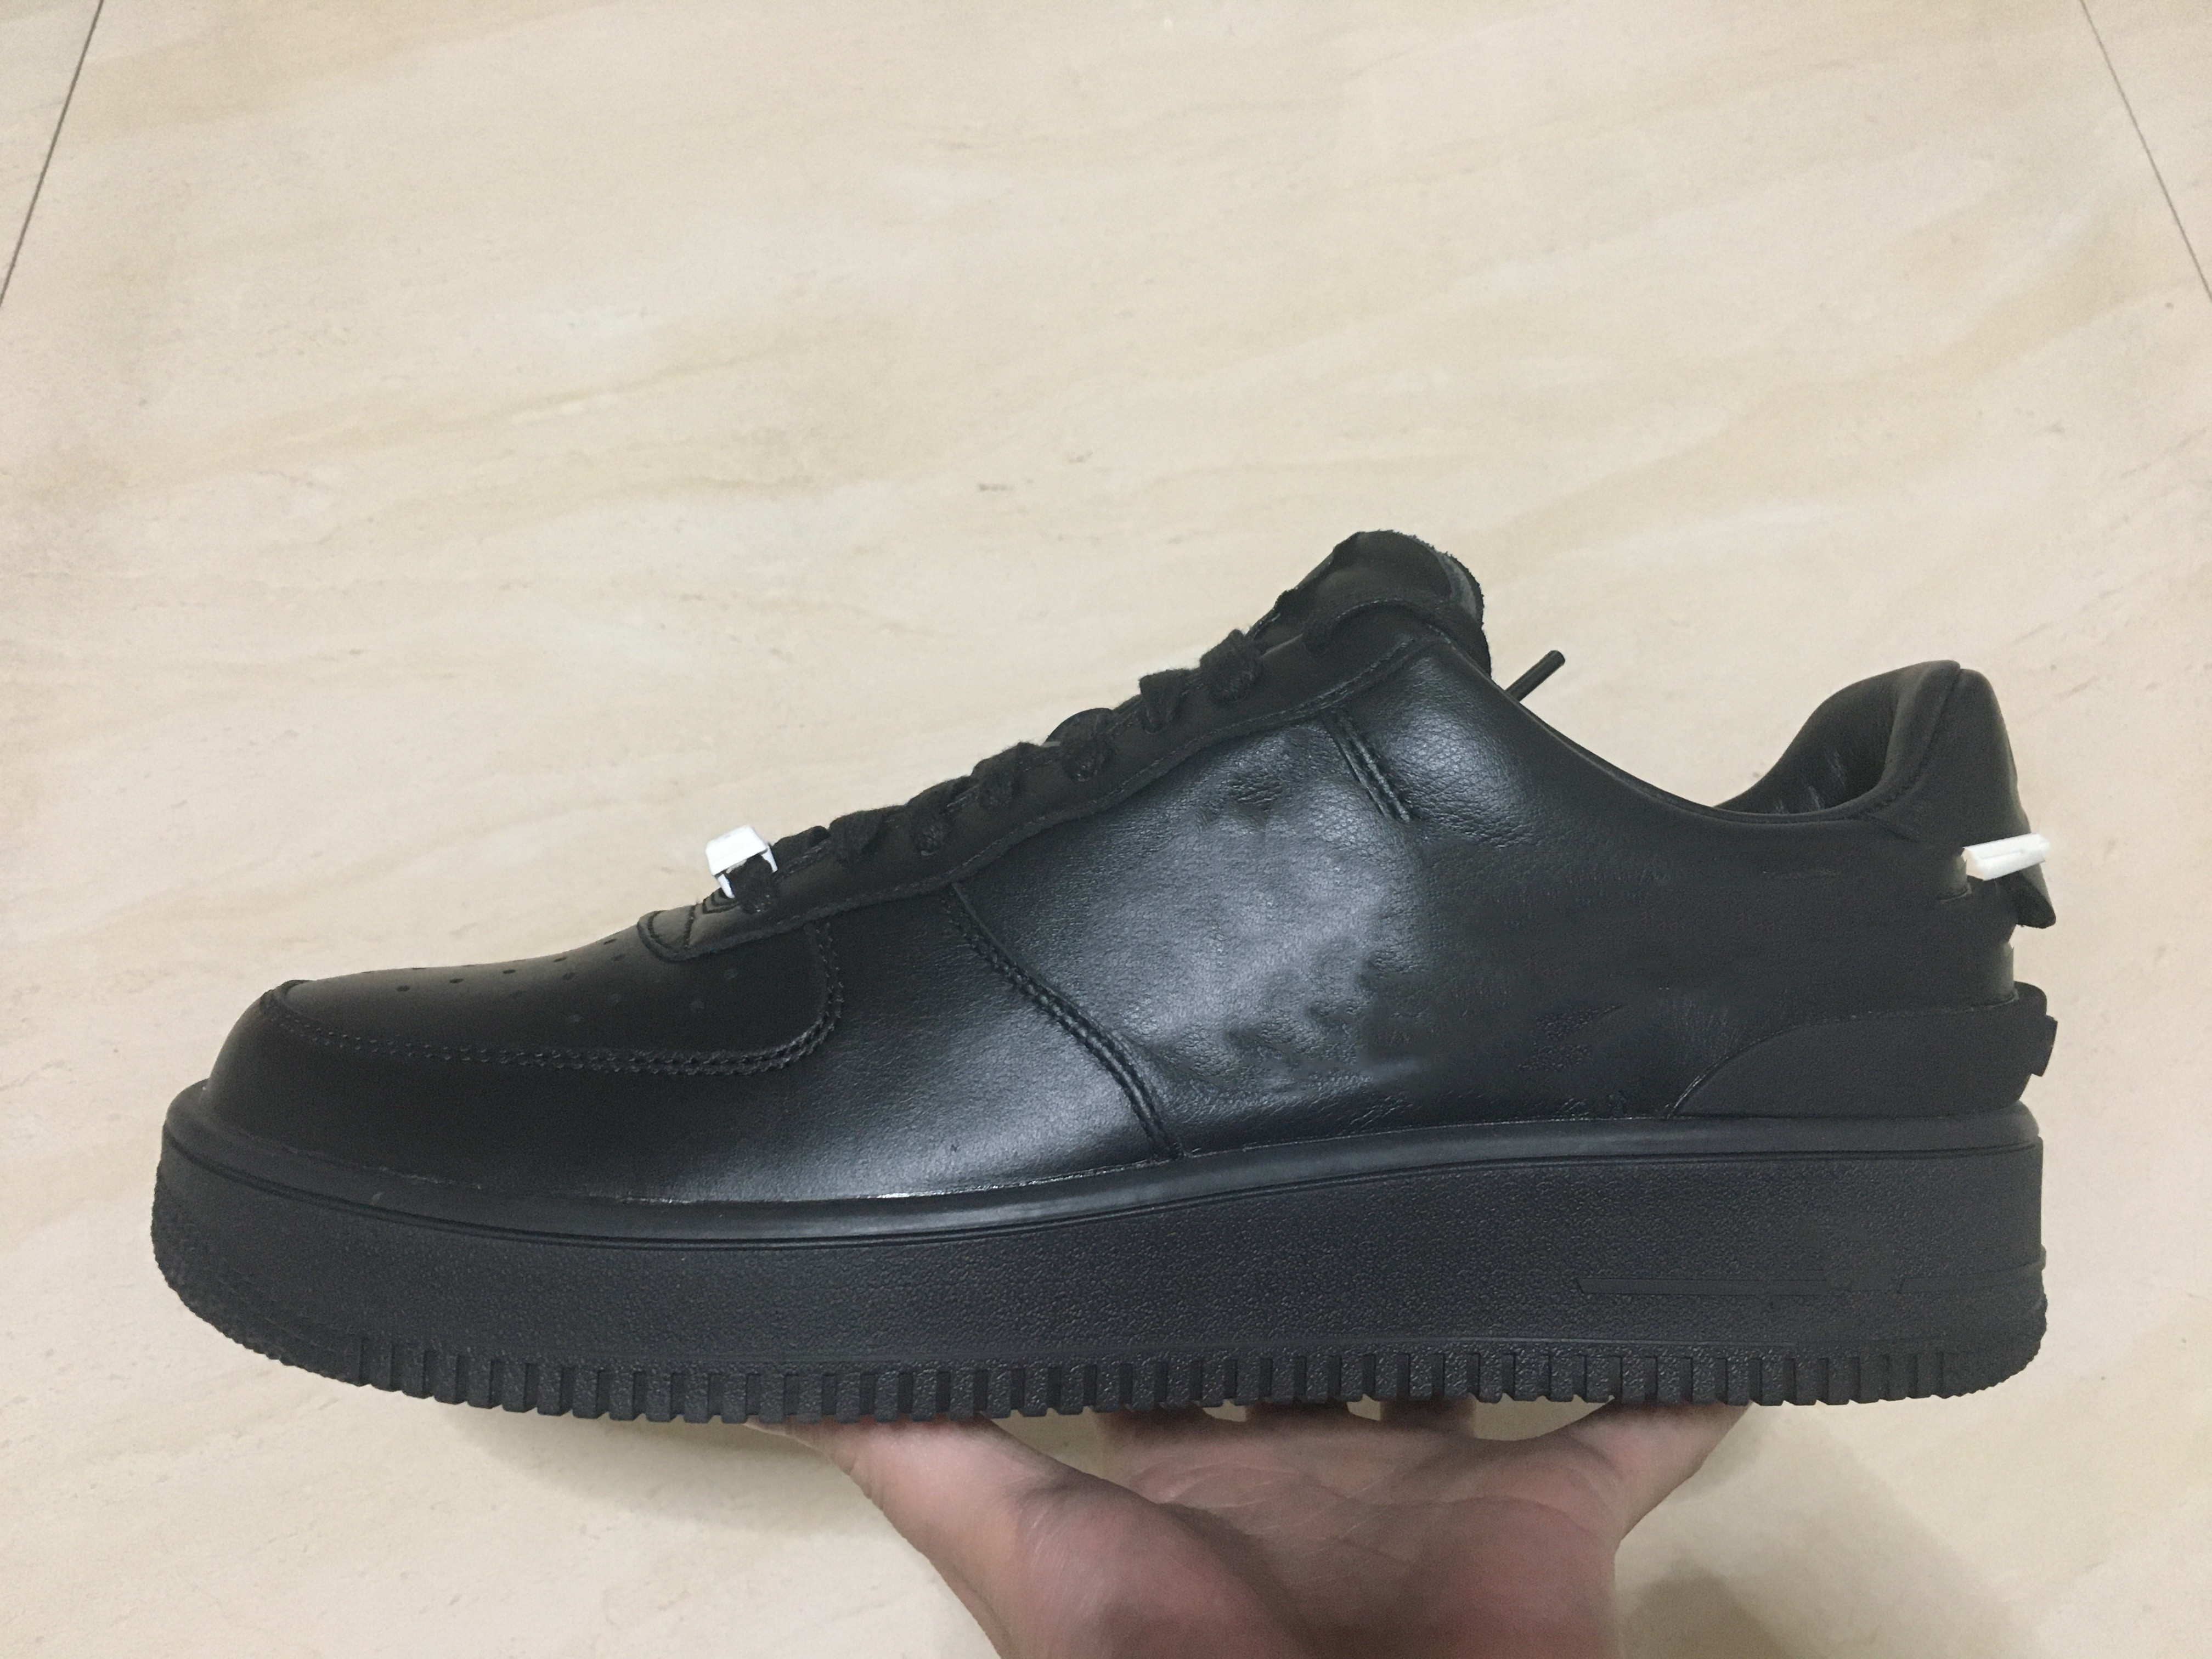 

fairfo 1 low Sneaker Runner s Running Shoes Genuine leather black DV3464-001 size 13